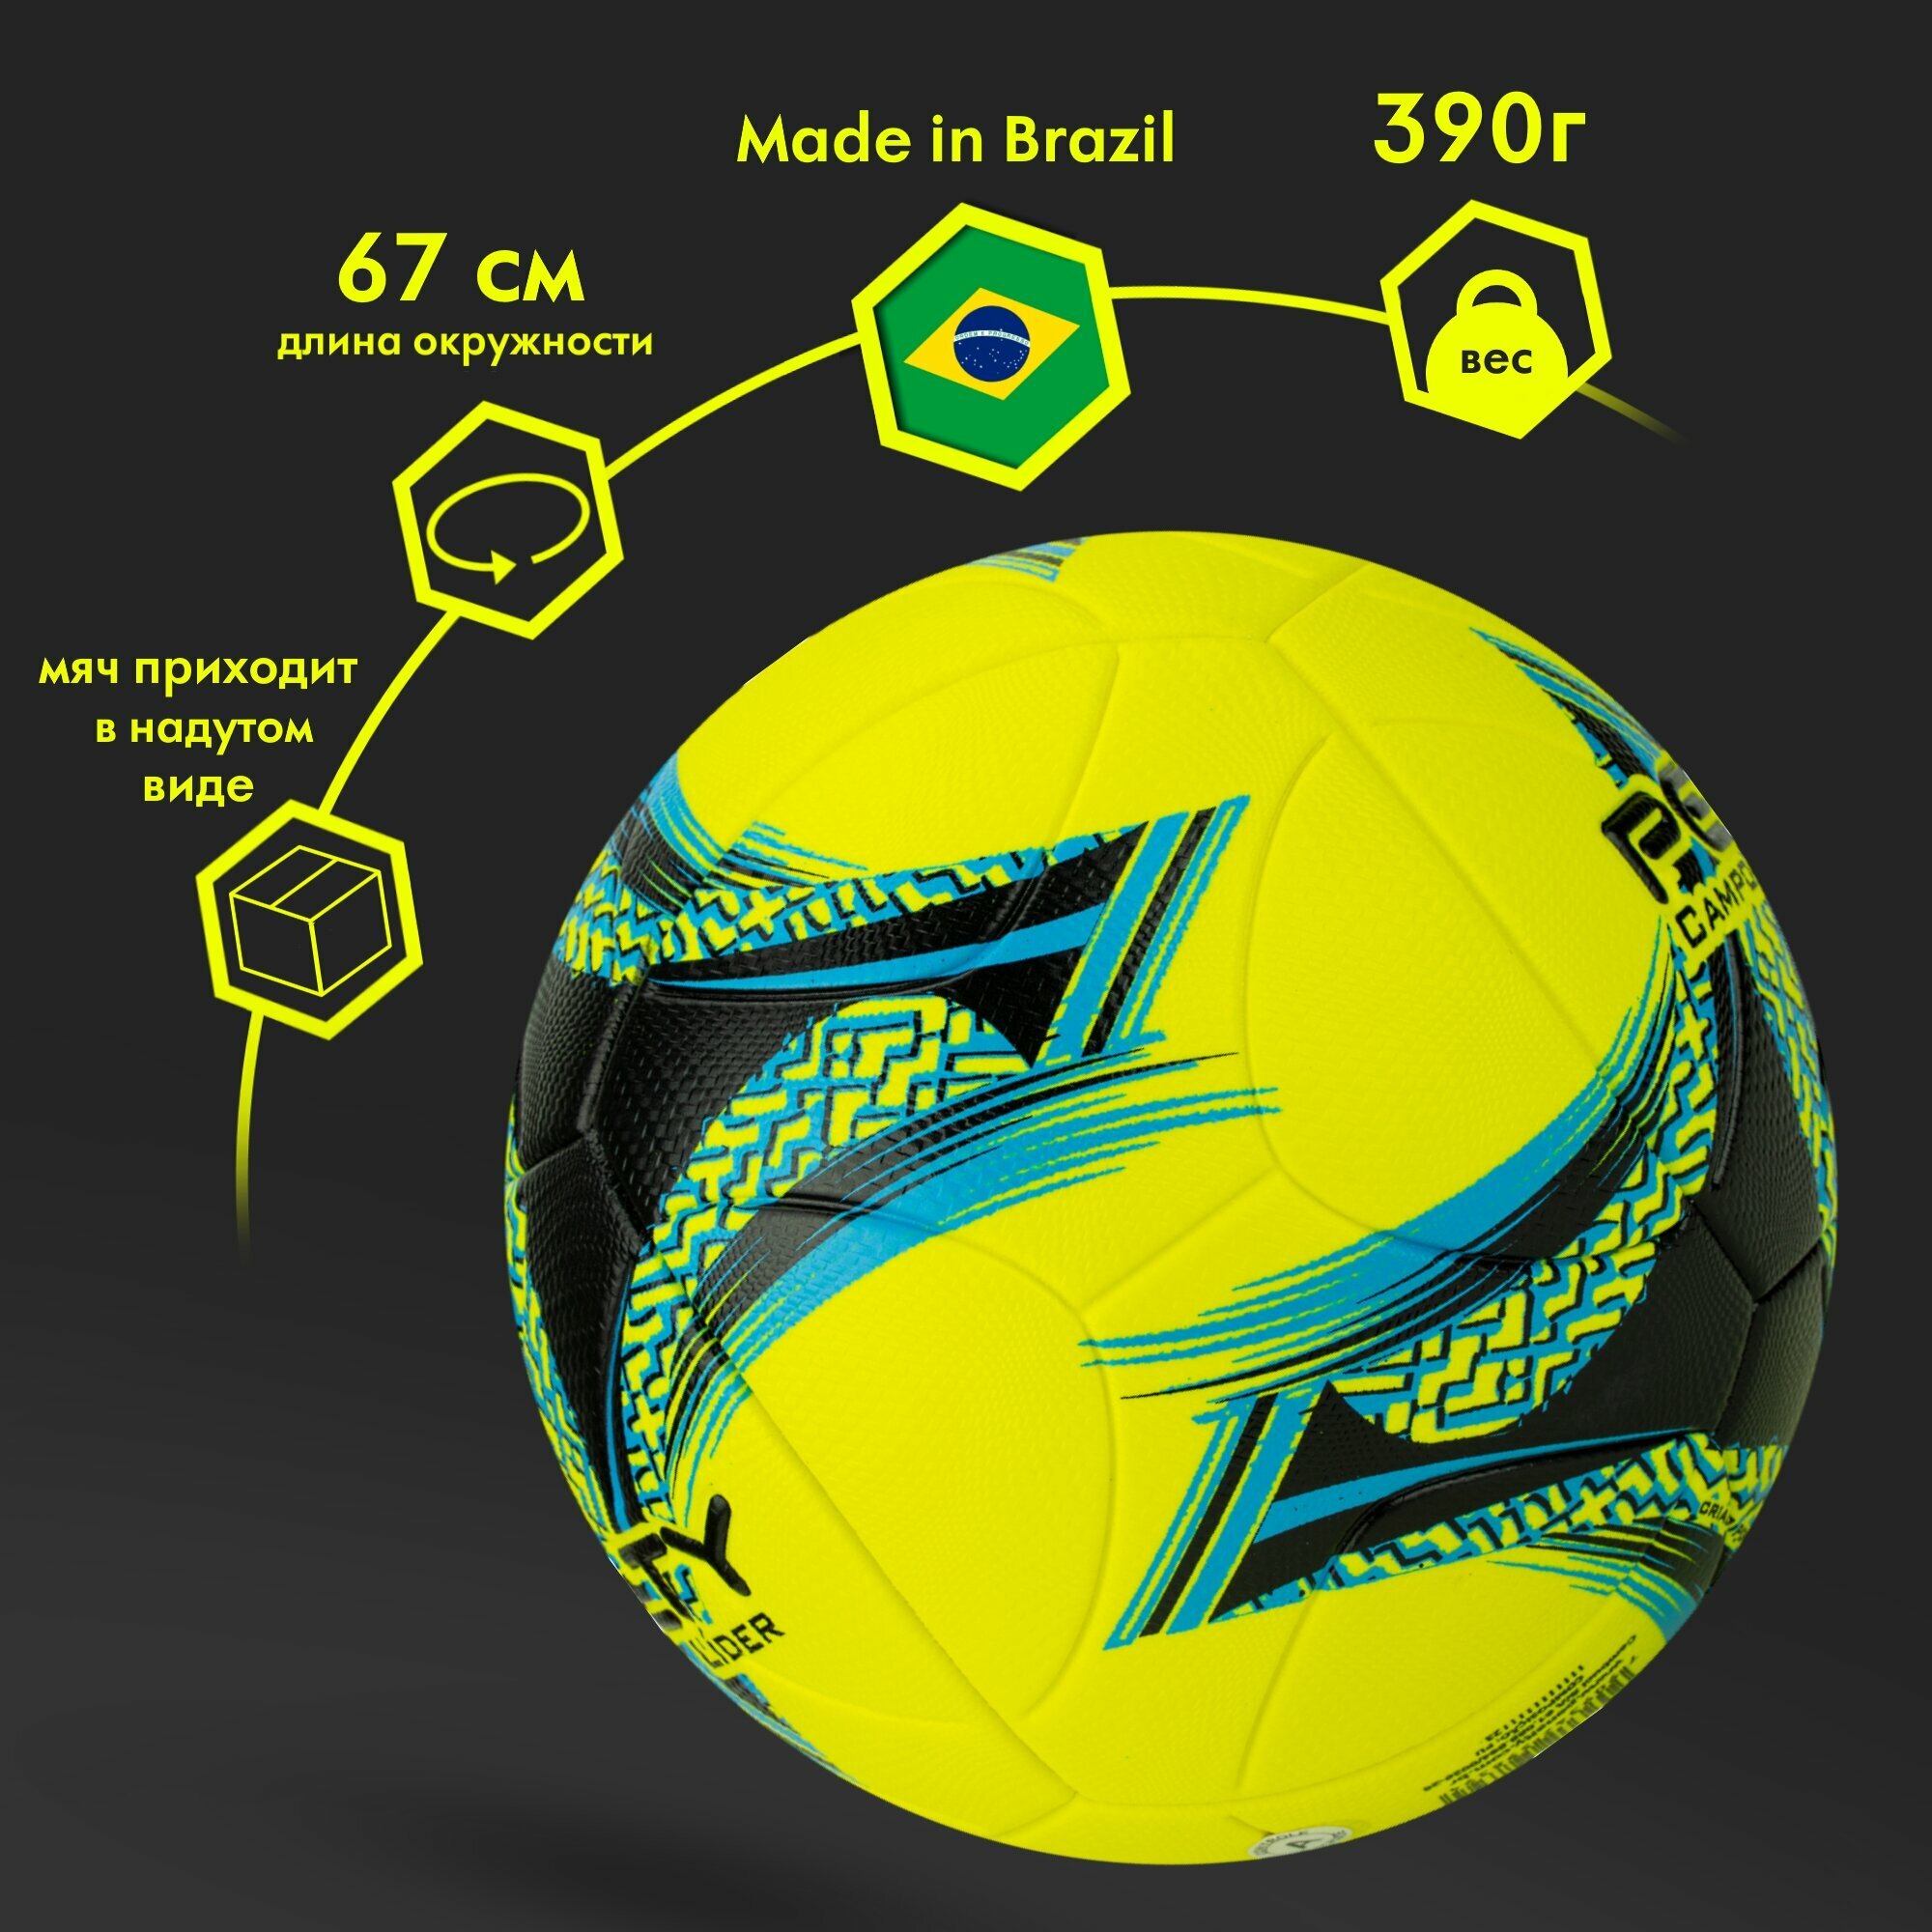 Мяч футбольный PENALTY BOLA CAMPO LIDER XXIII 5213382250-U, размер 5, желто-черно-синий